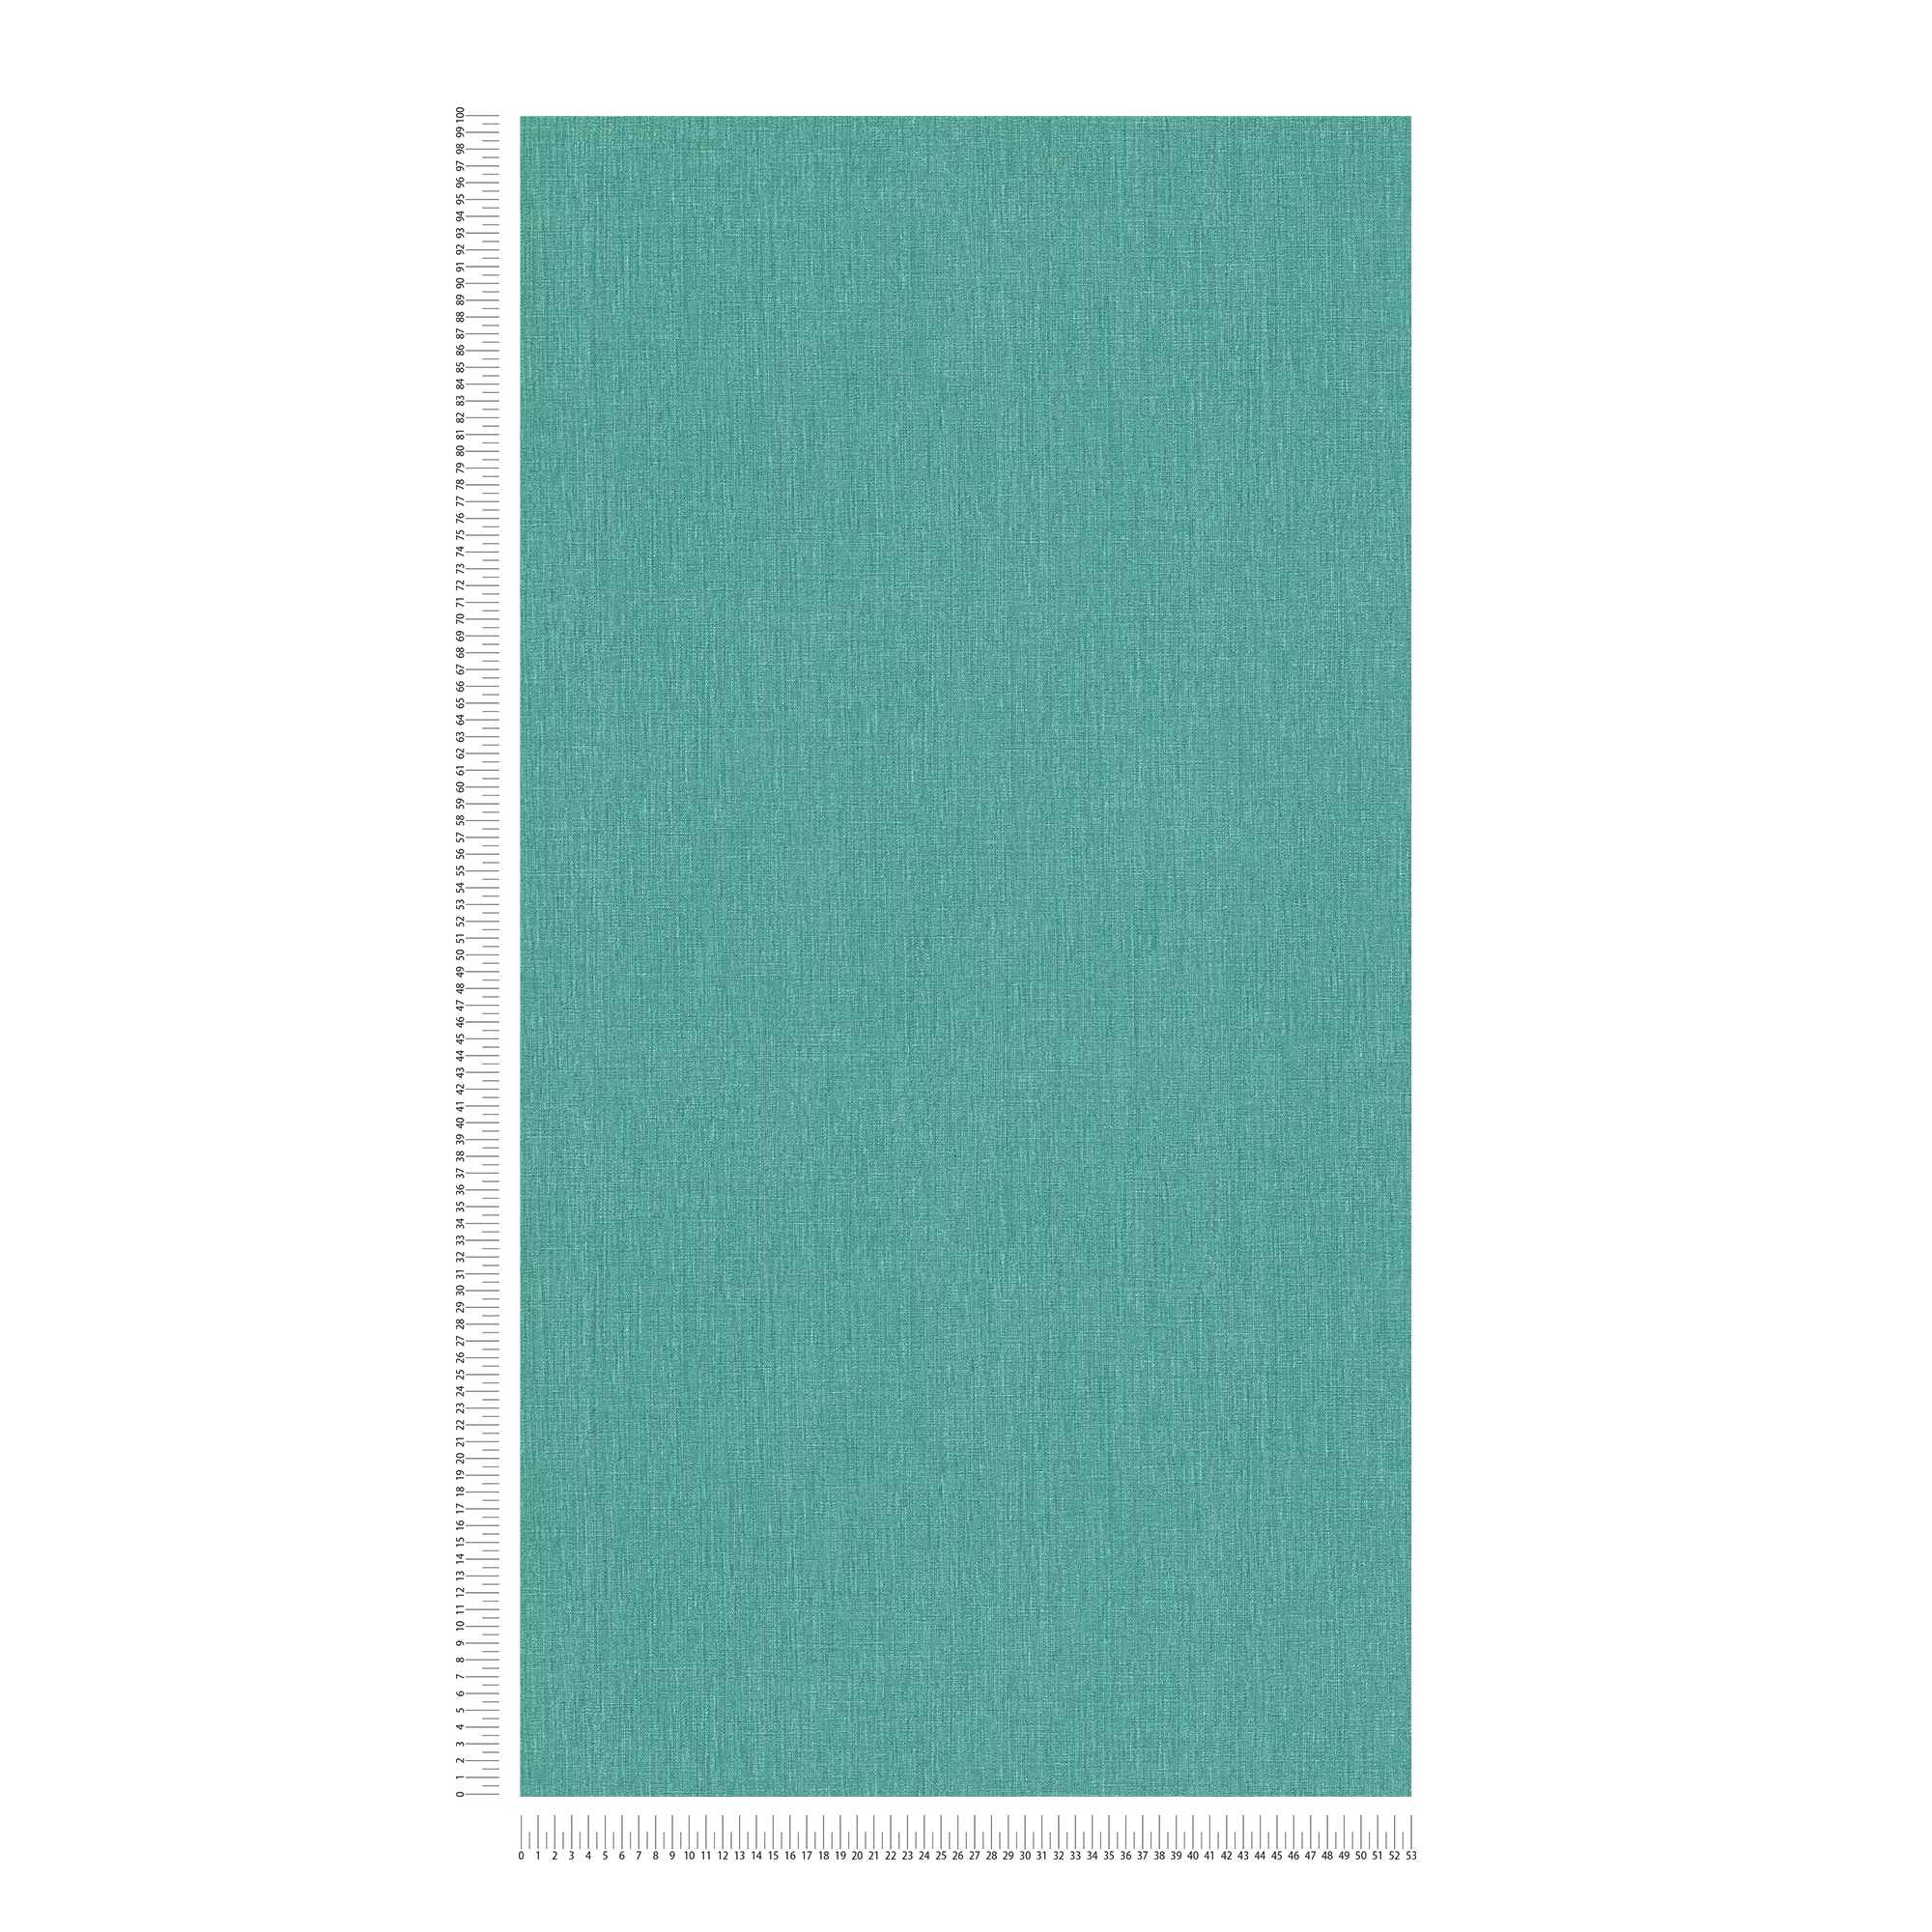             Carta da parati unitaria con texture su tessuto non tessuto in aspetto opaco - verde, blu
        